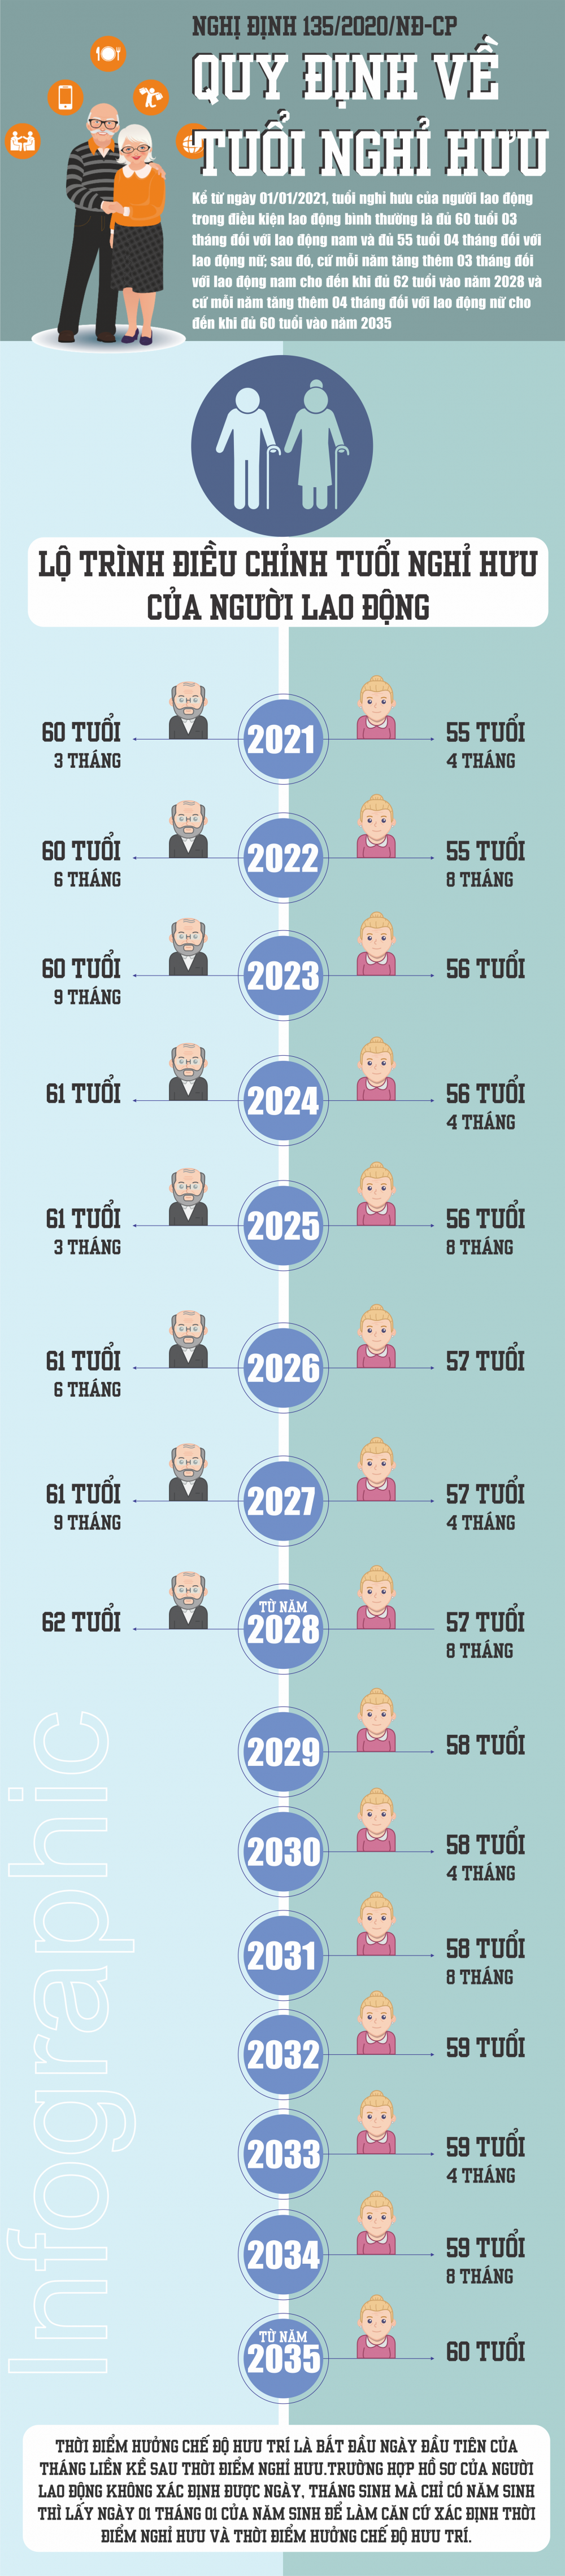 Quy định mới nhất về tuổi nghỉ hưu bắt đầu áp dụng từ 1/1/2021